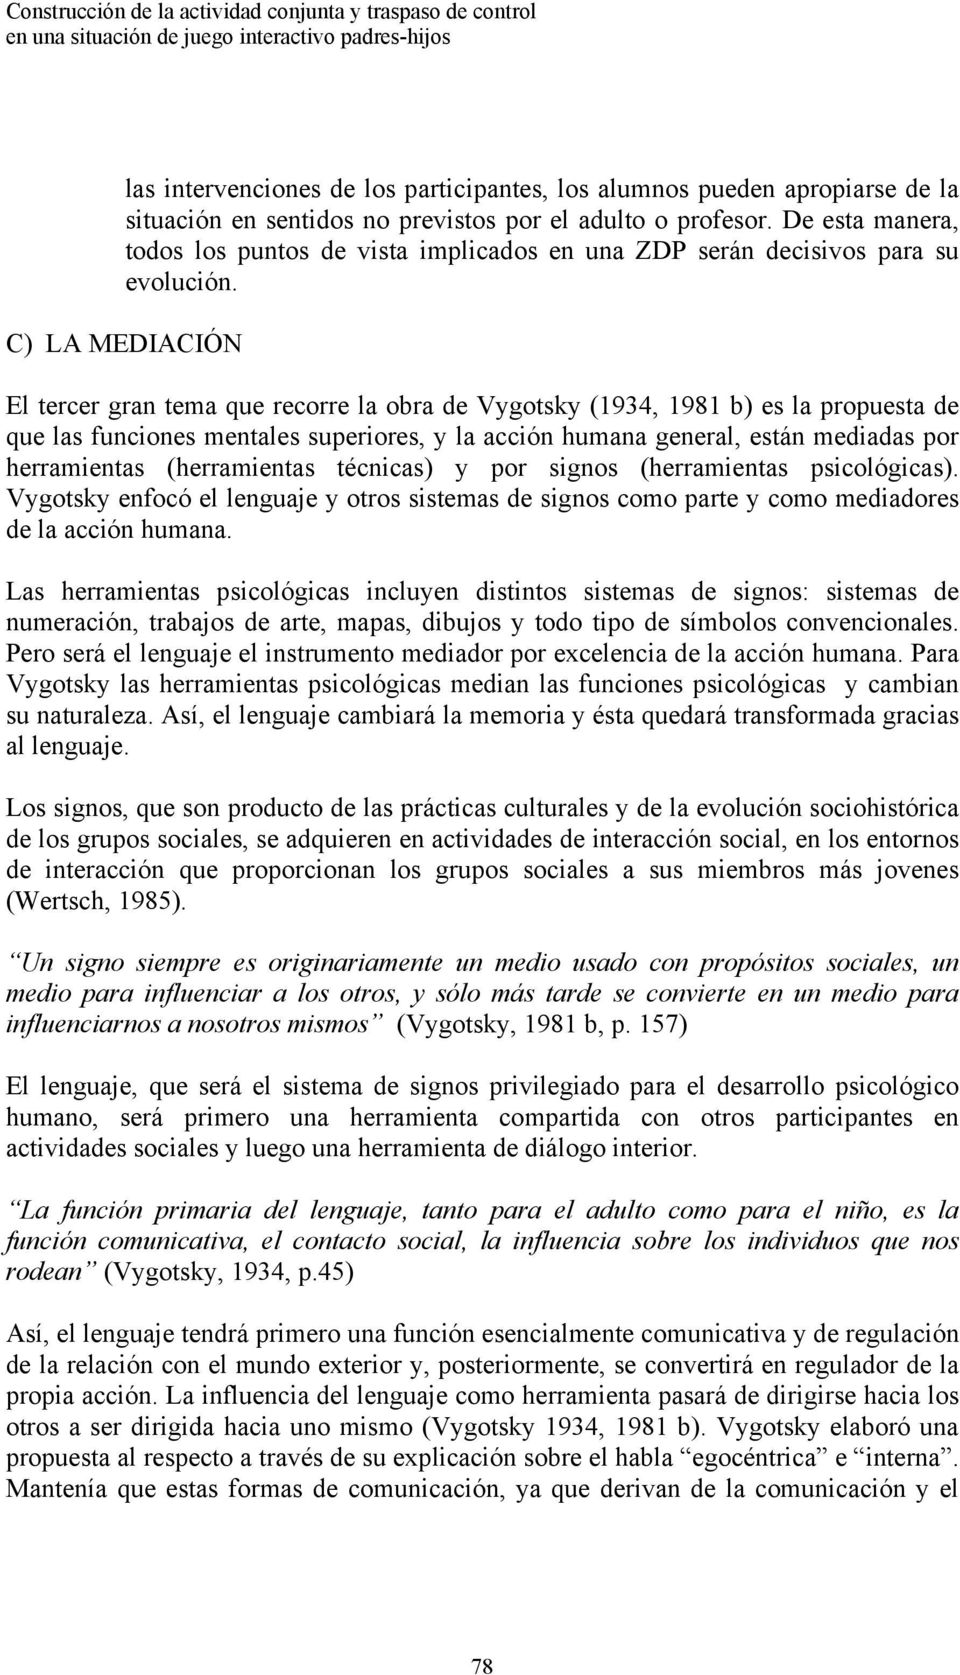 C) LA MEDIACIÓN El tercer gran tema que recorre la obra de Vygotsky (1934, 1981 b) es la propuesta de que las funciones mentales superiores, y la acción humana general, están mediadas por